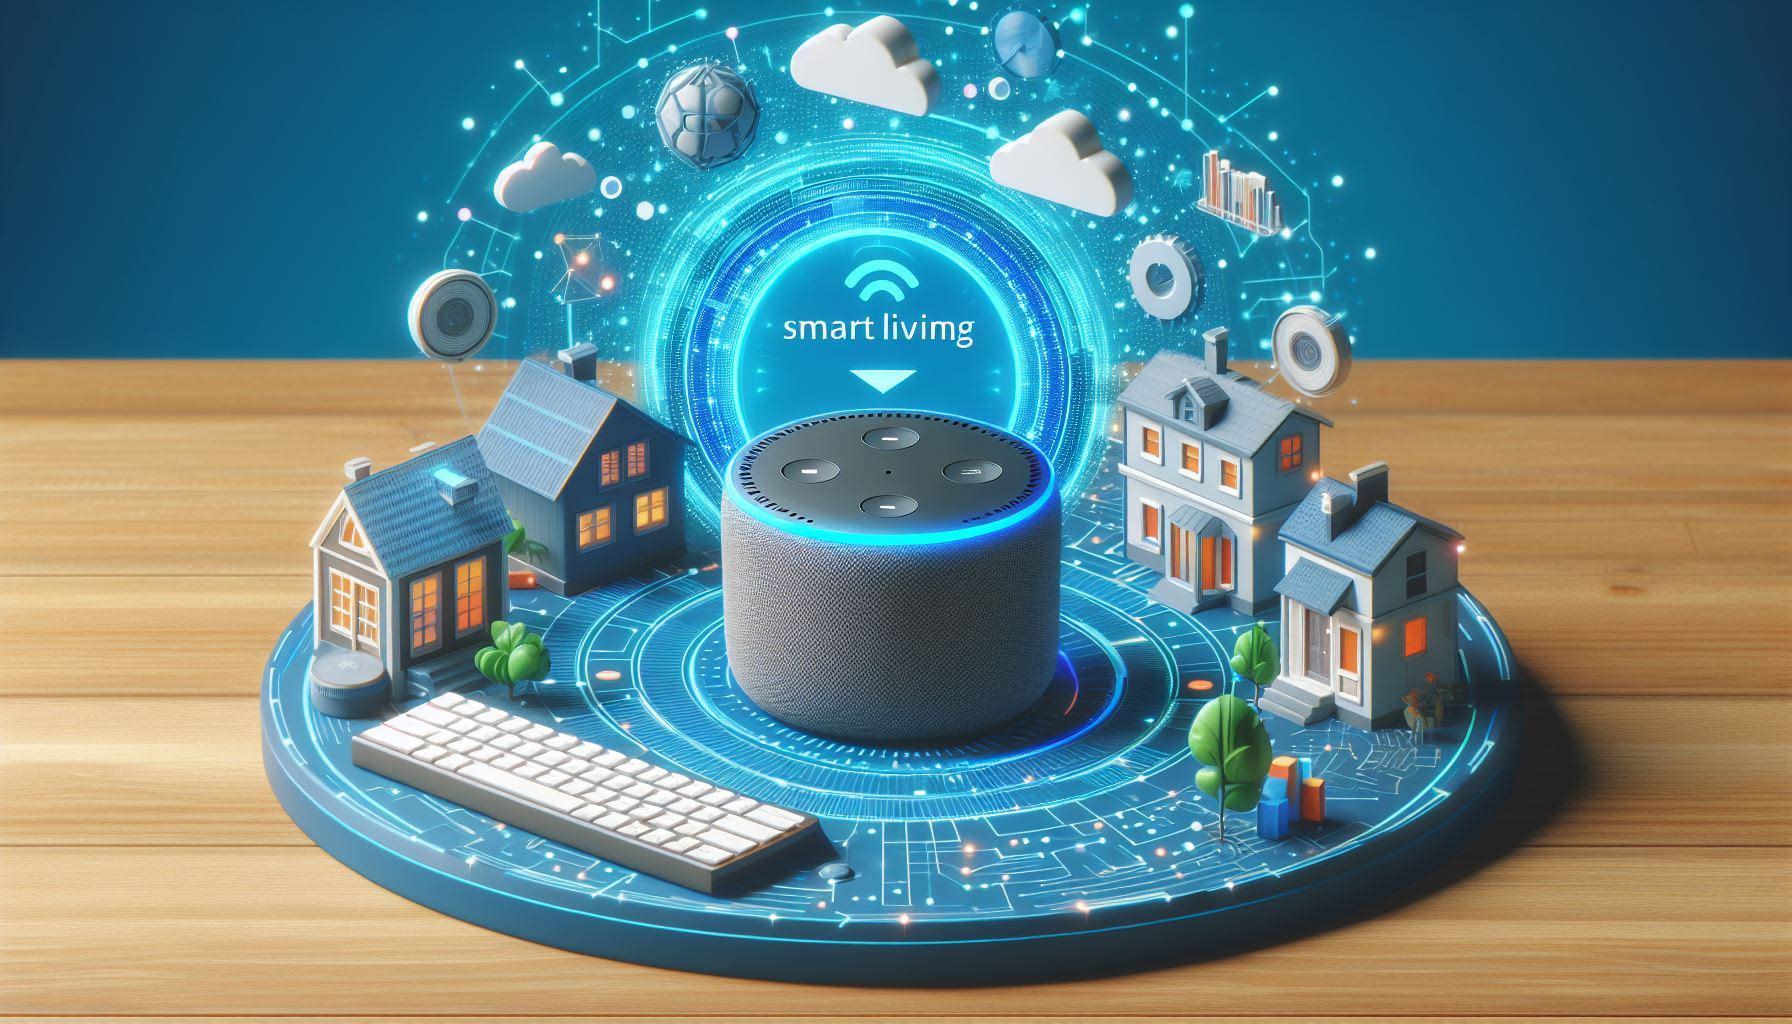 Amazon Echo Dot: Your Gateway to Smart Living